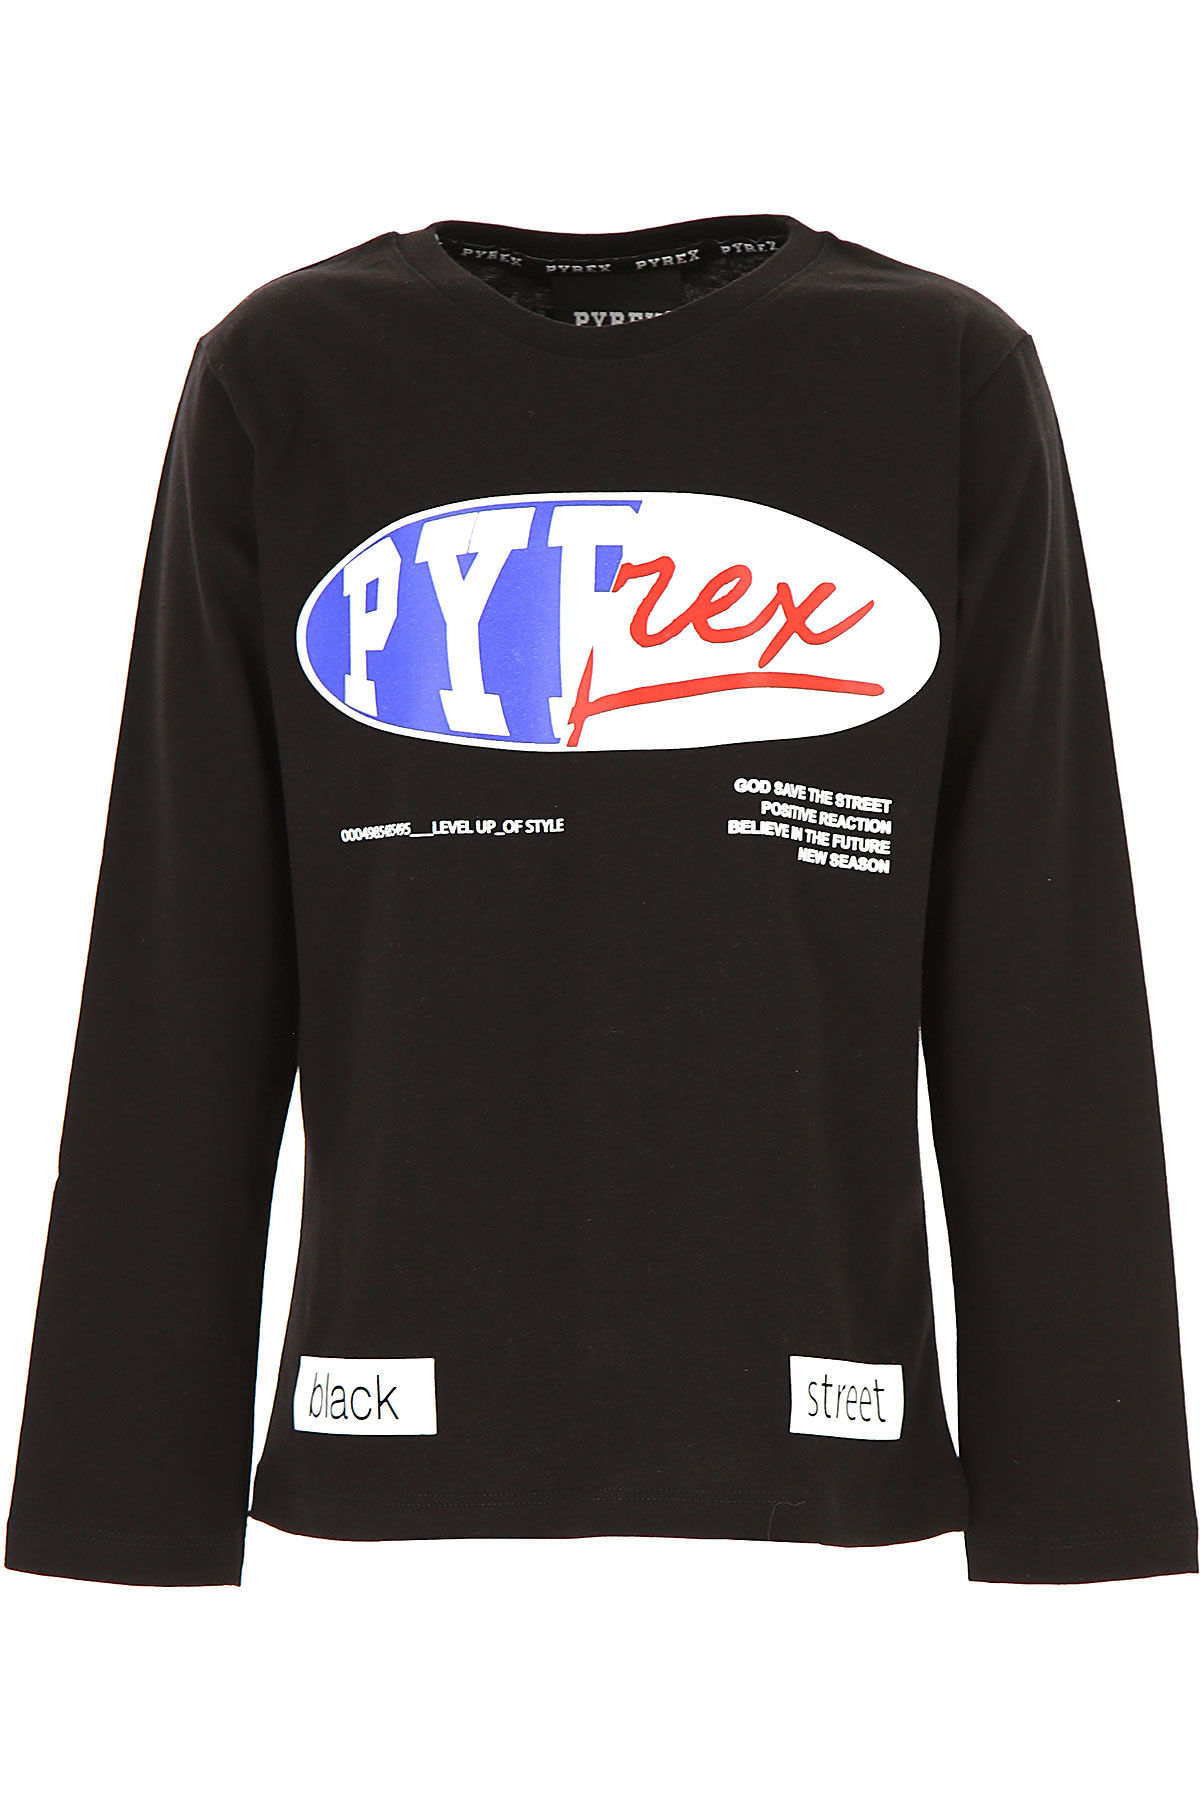 Pyrex Kinder T-Shirt für Jungen Günstig im Sale, Schwarz, Baumwolle, 2017, L M S XL XS XXL (16 Y)